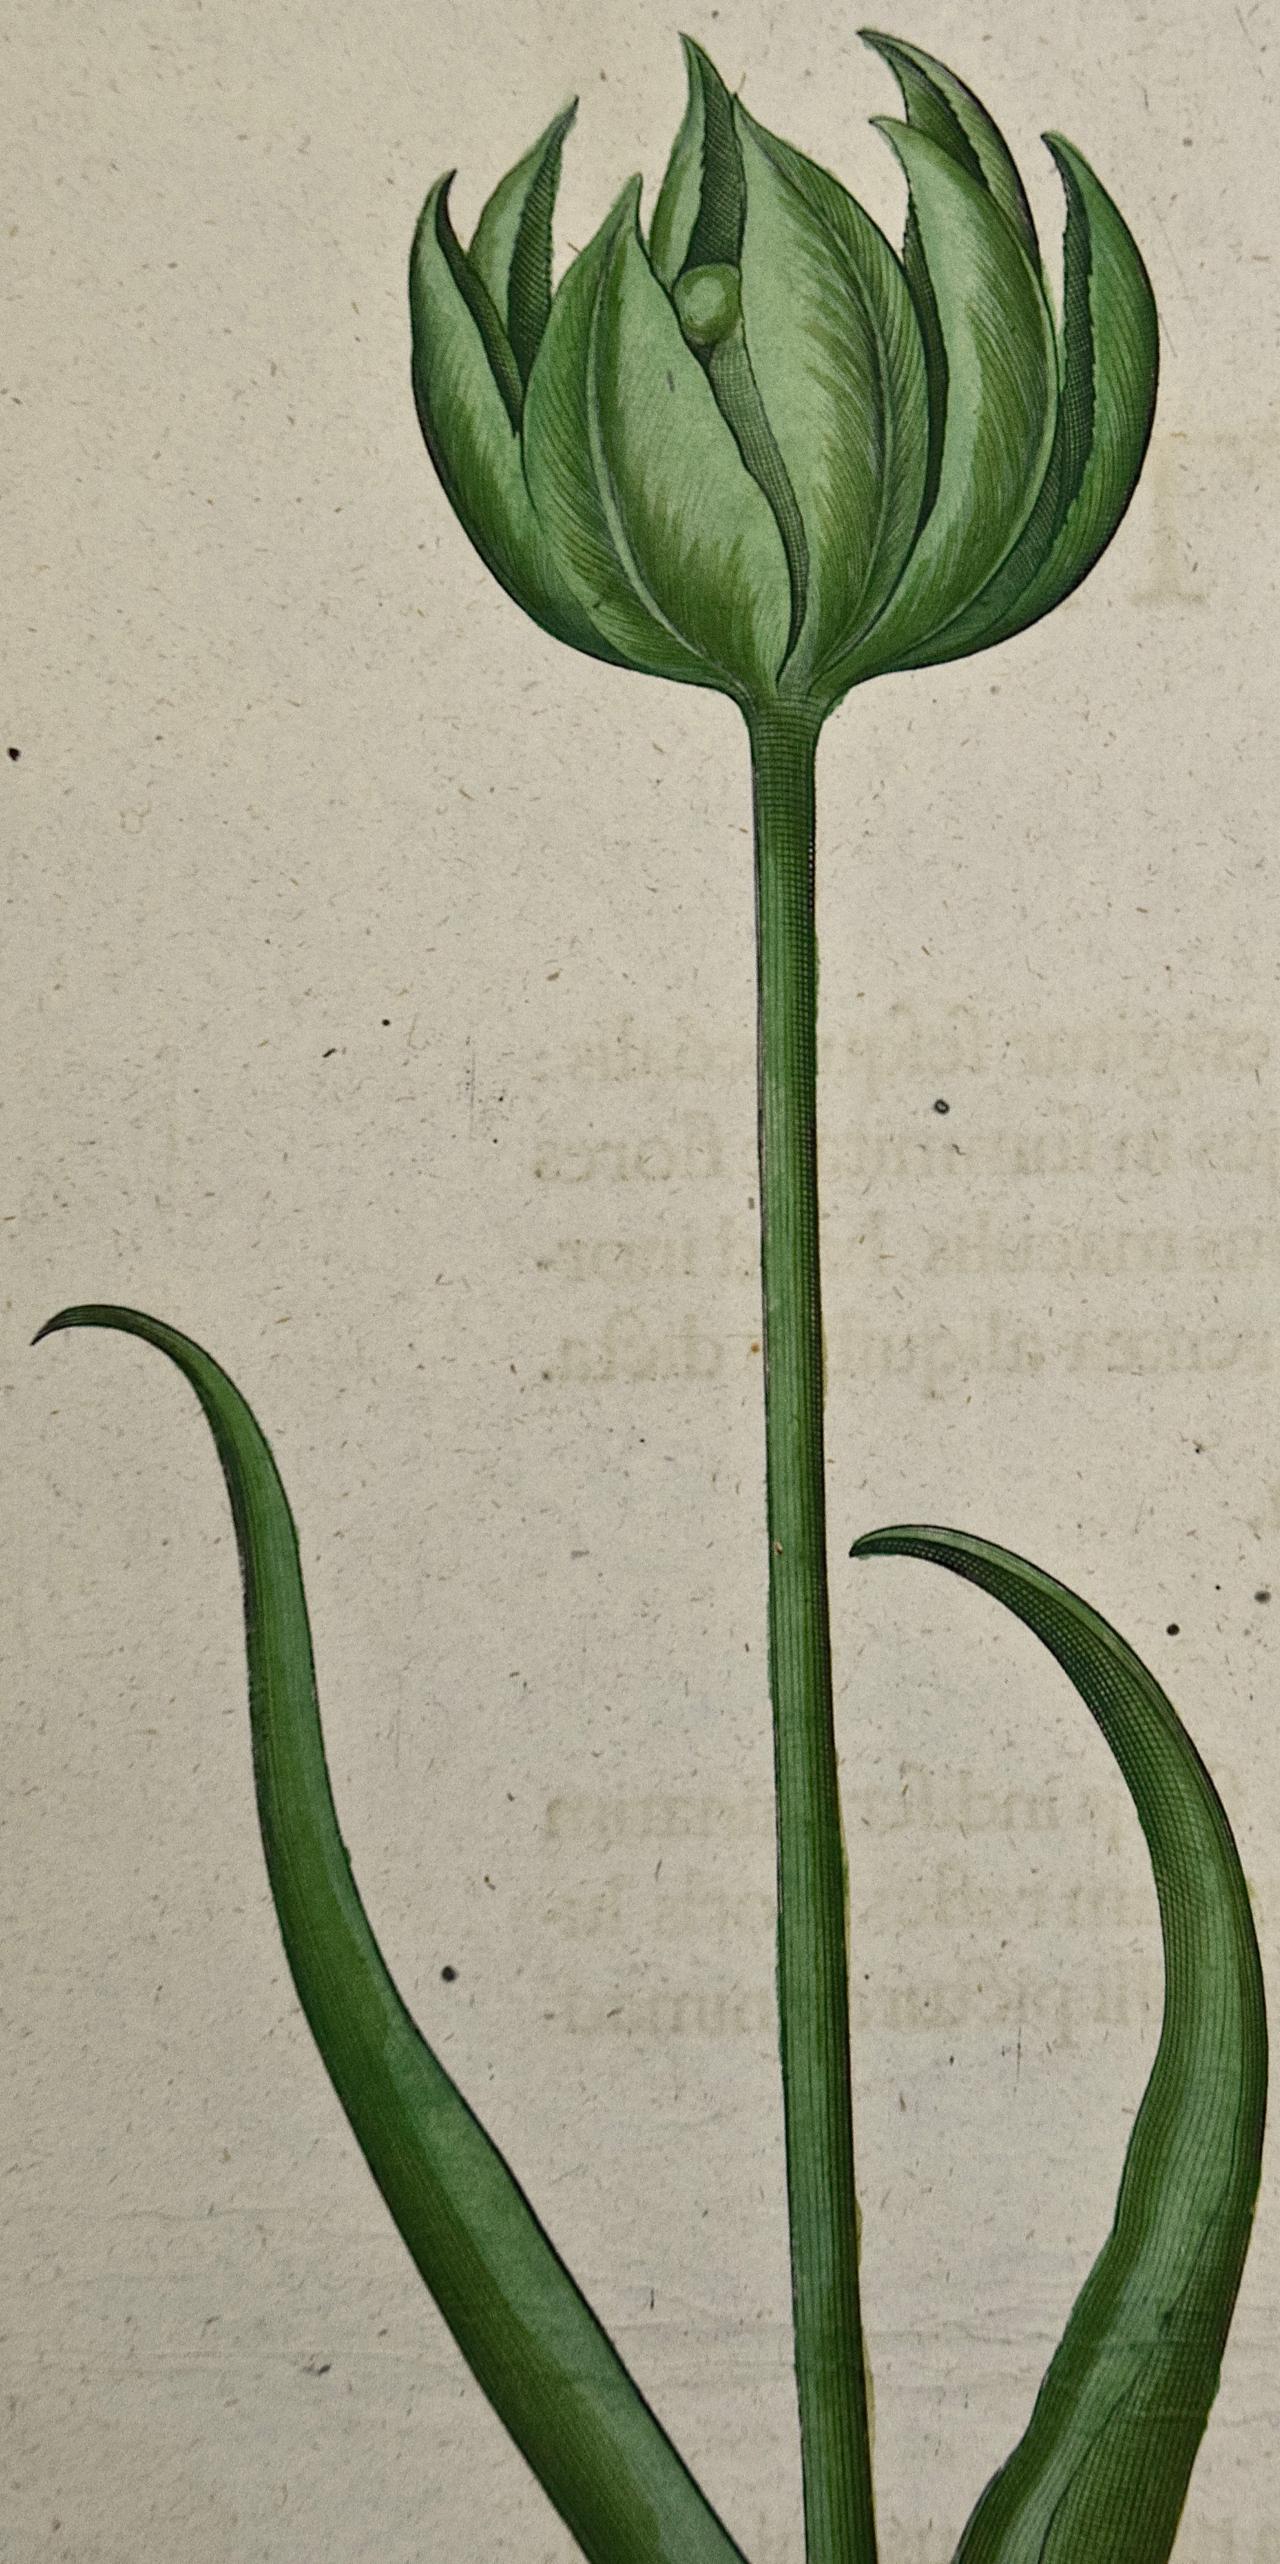 Besler Handkolorierte botanische Gravur von blühenden Tulpen und Wildgirlandpflanzen  – Print von Basilius Besler